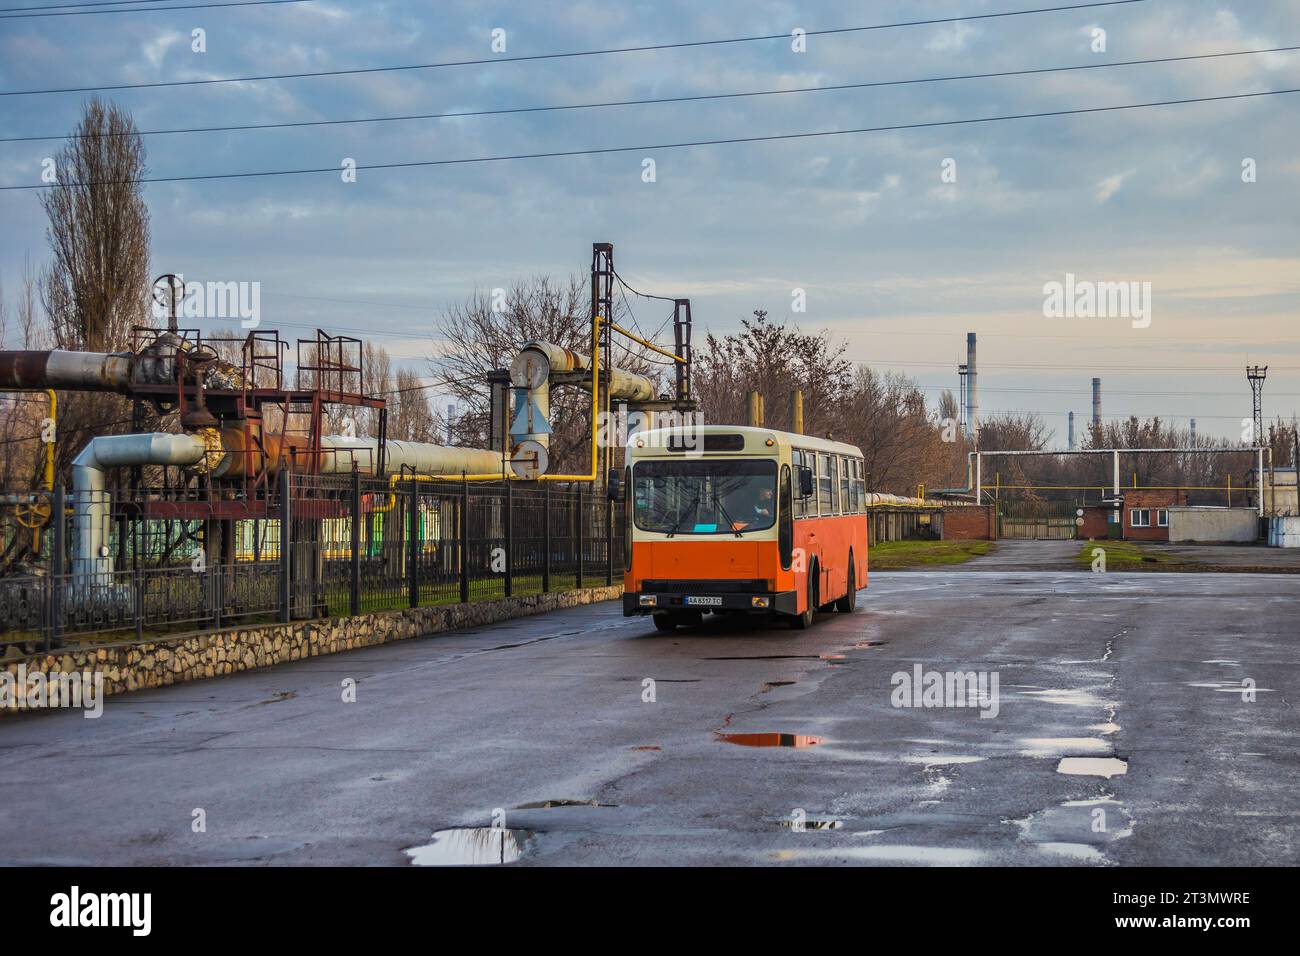 31.12.2020. Ukraine, Kremenchuk. Ikarus Zemun on a short ride especially for me. Stock Photo